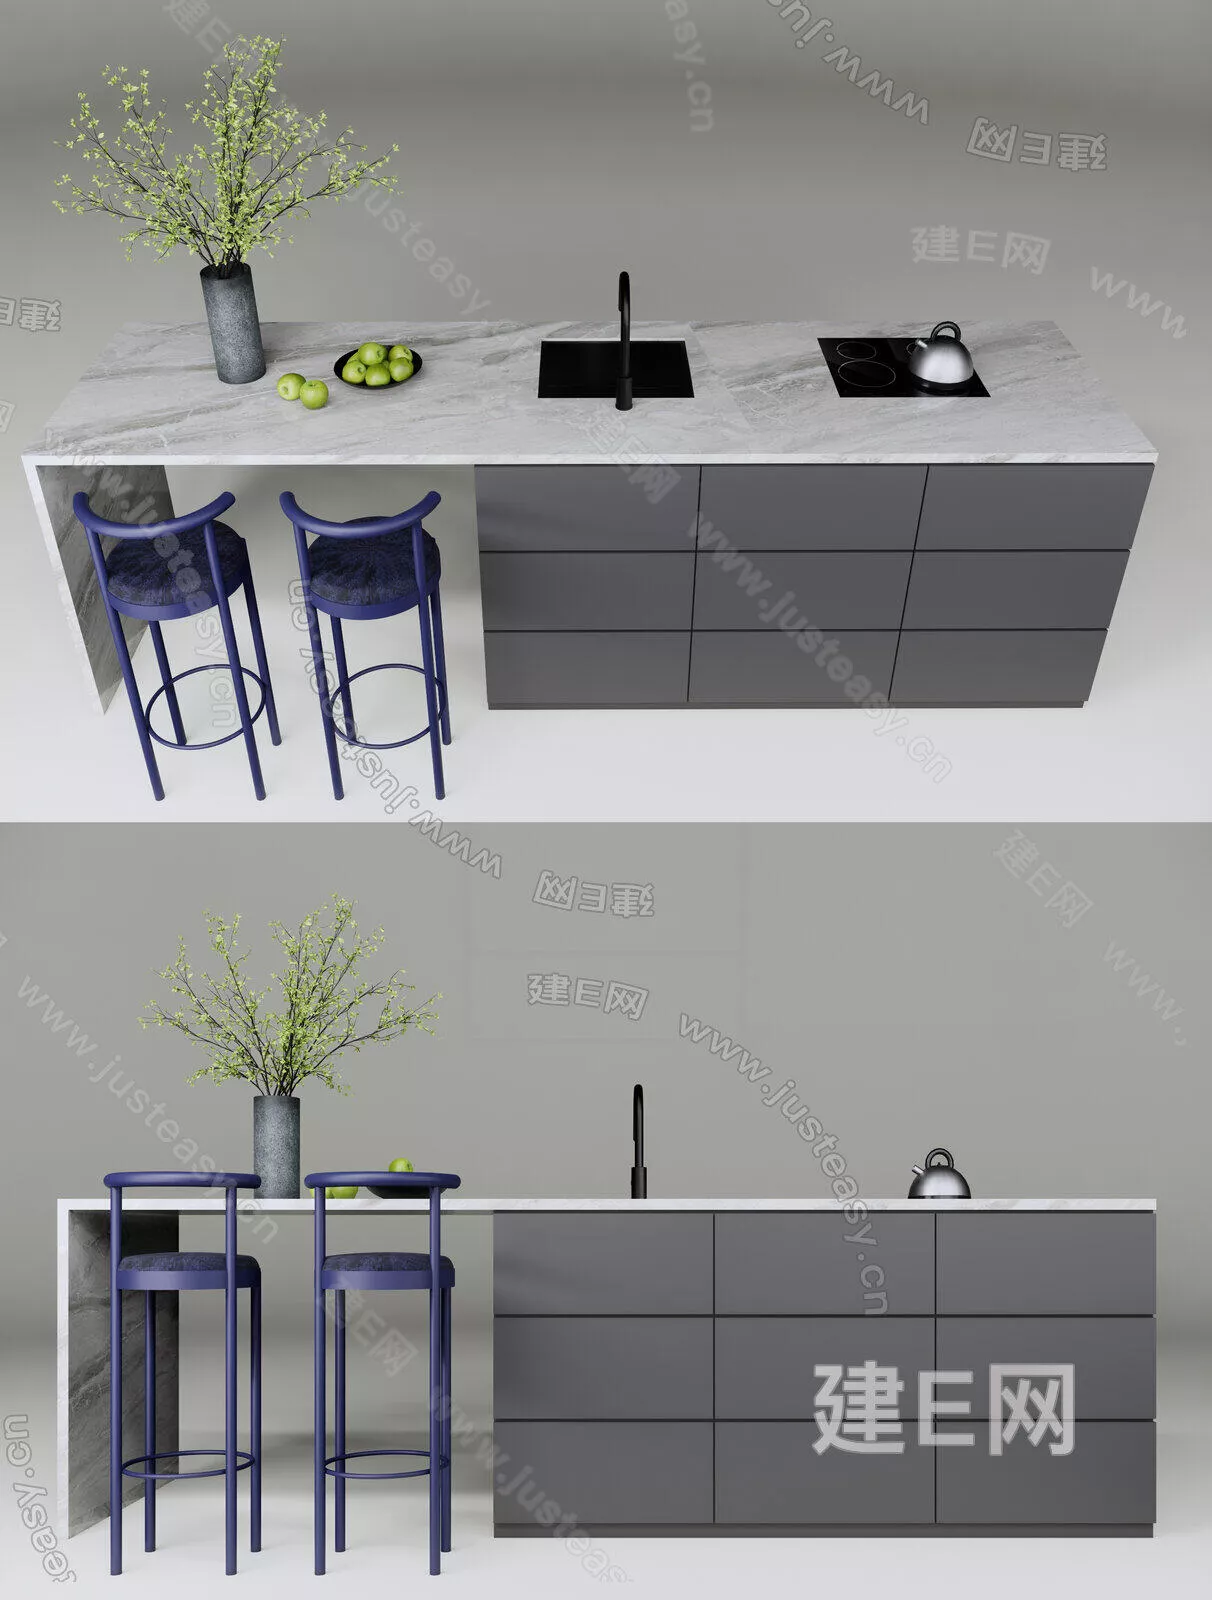 MODERN DINING TABLE SET - SKETCHUP 3D MODEL - ENSCAPE - 112280649